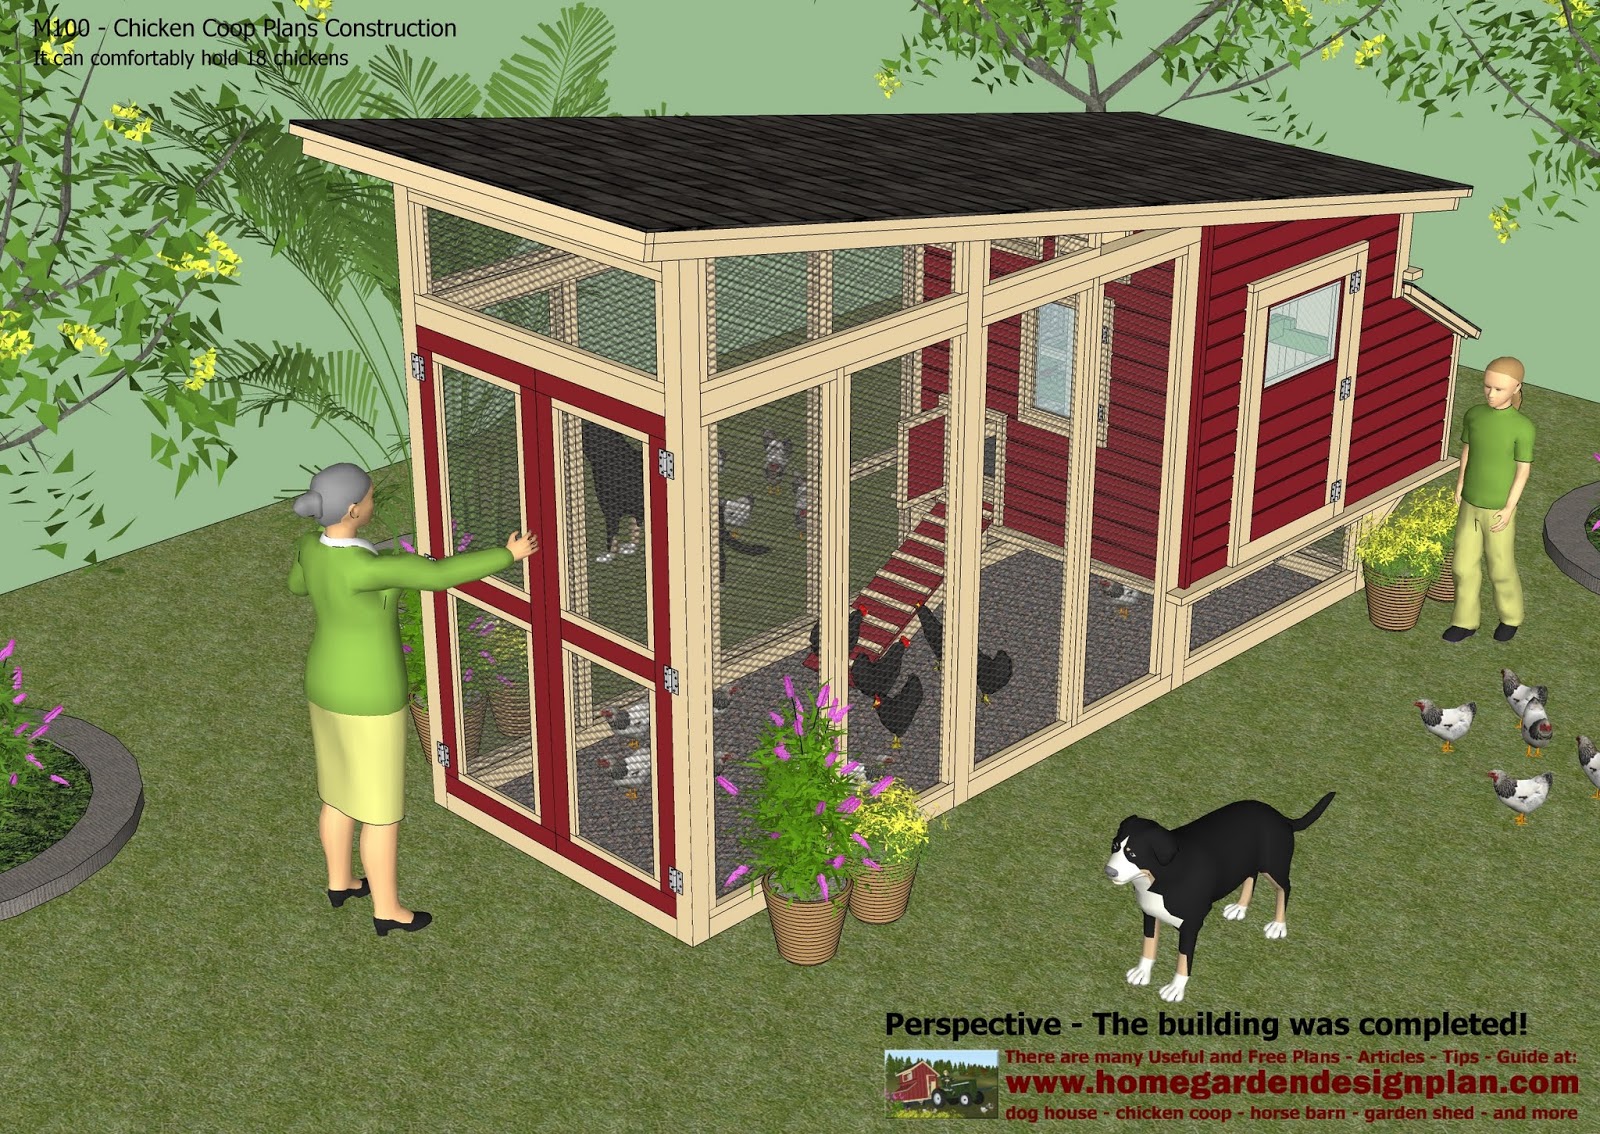 garden plans: M100 - Chicken Coop Plans Construction - Chicken Coop 